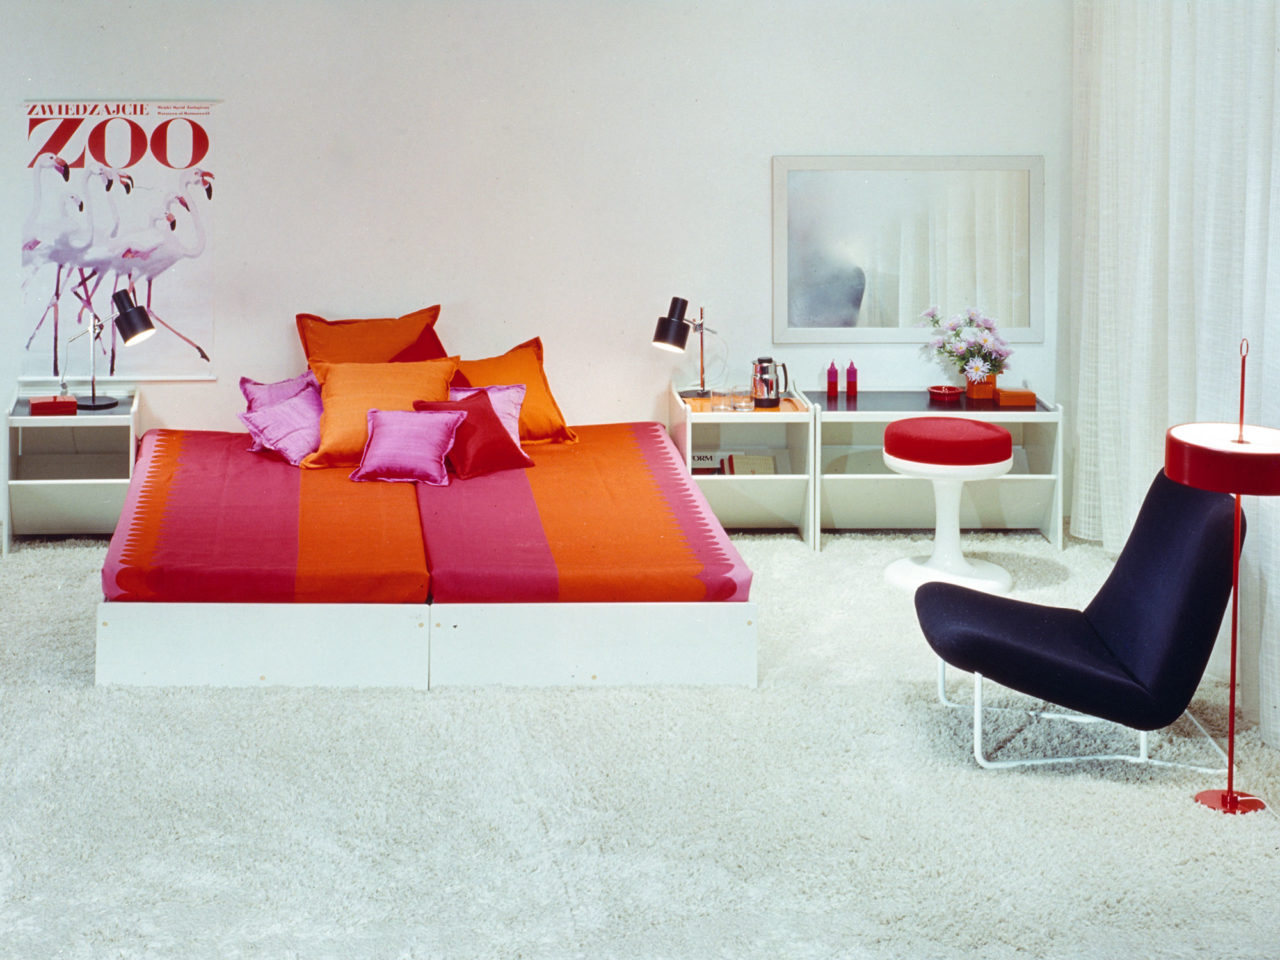 Chambre blanche avec détails colorés, lit HEPP au centre, linge de lit acidulé rose et orange.